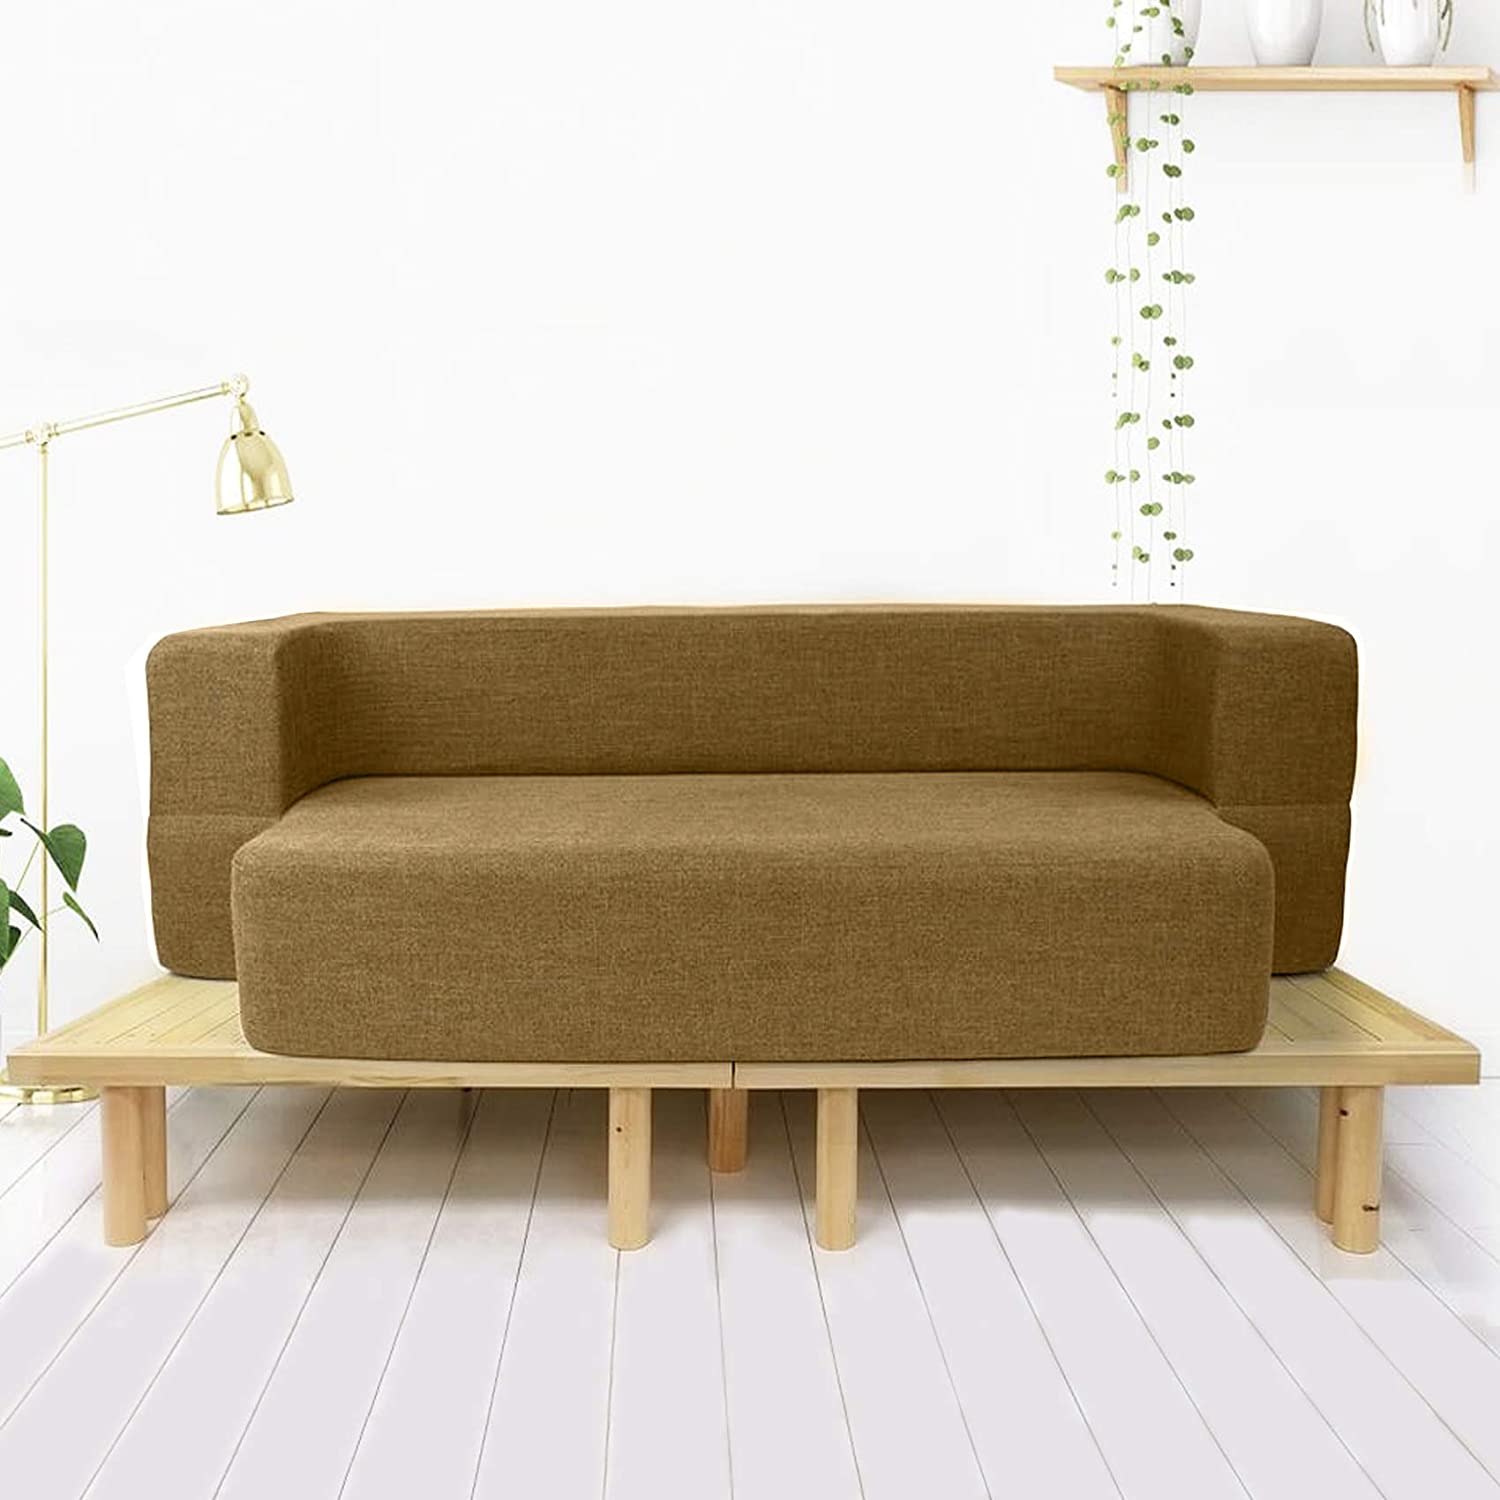 sofa-cum-bed-mattress-1 (1)